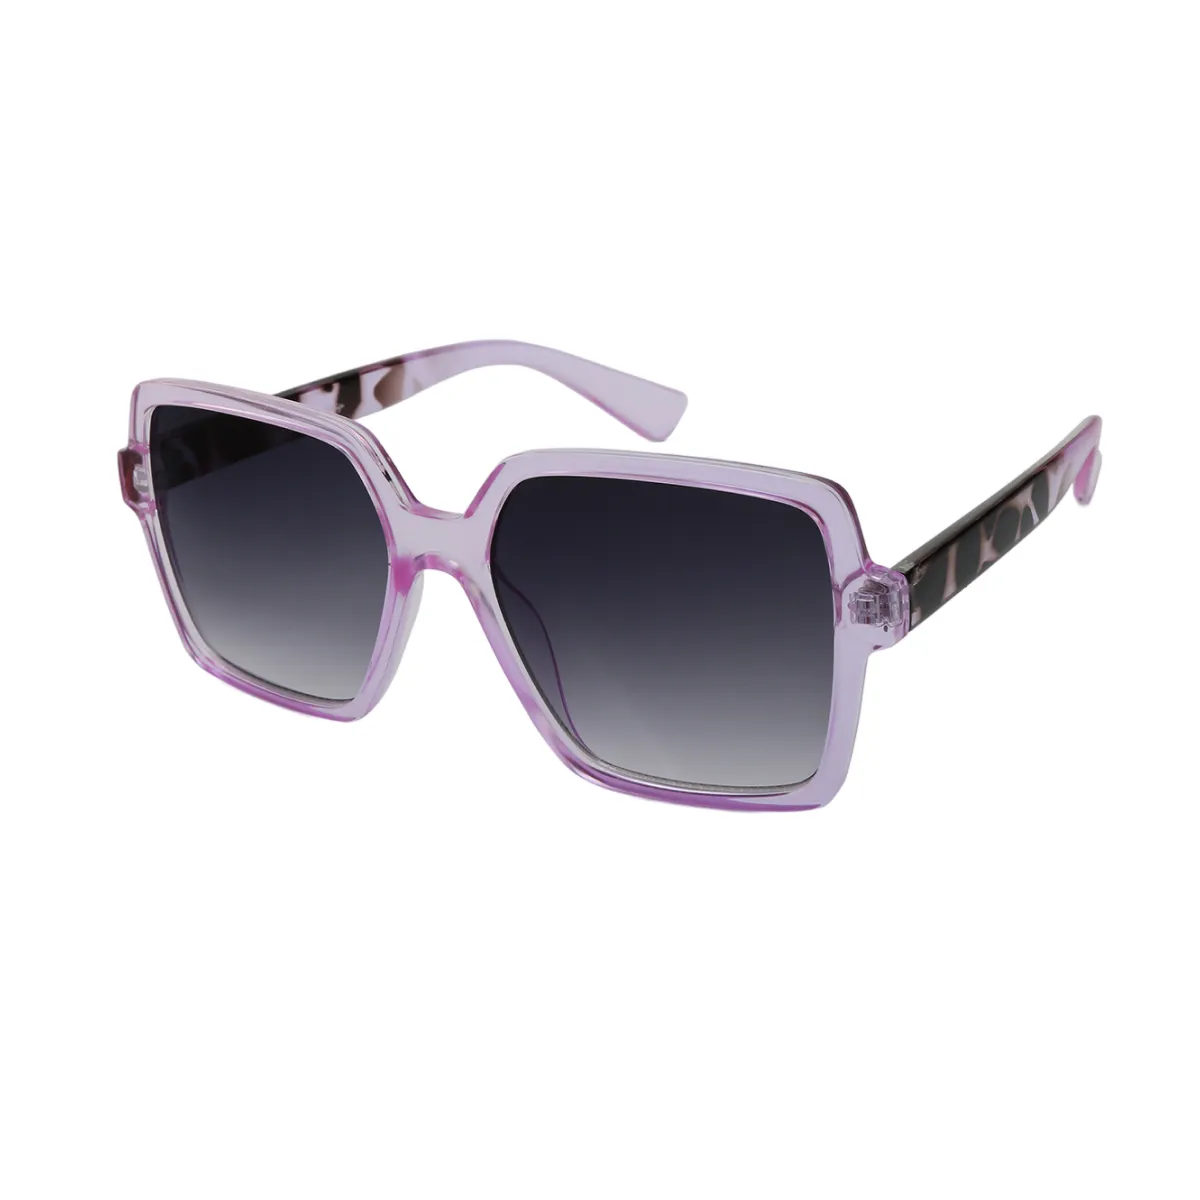 Sadie - Square Transparent Purple Sunglasses for Women